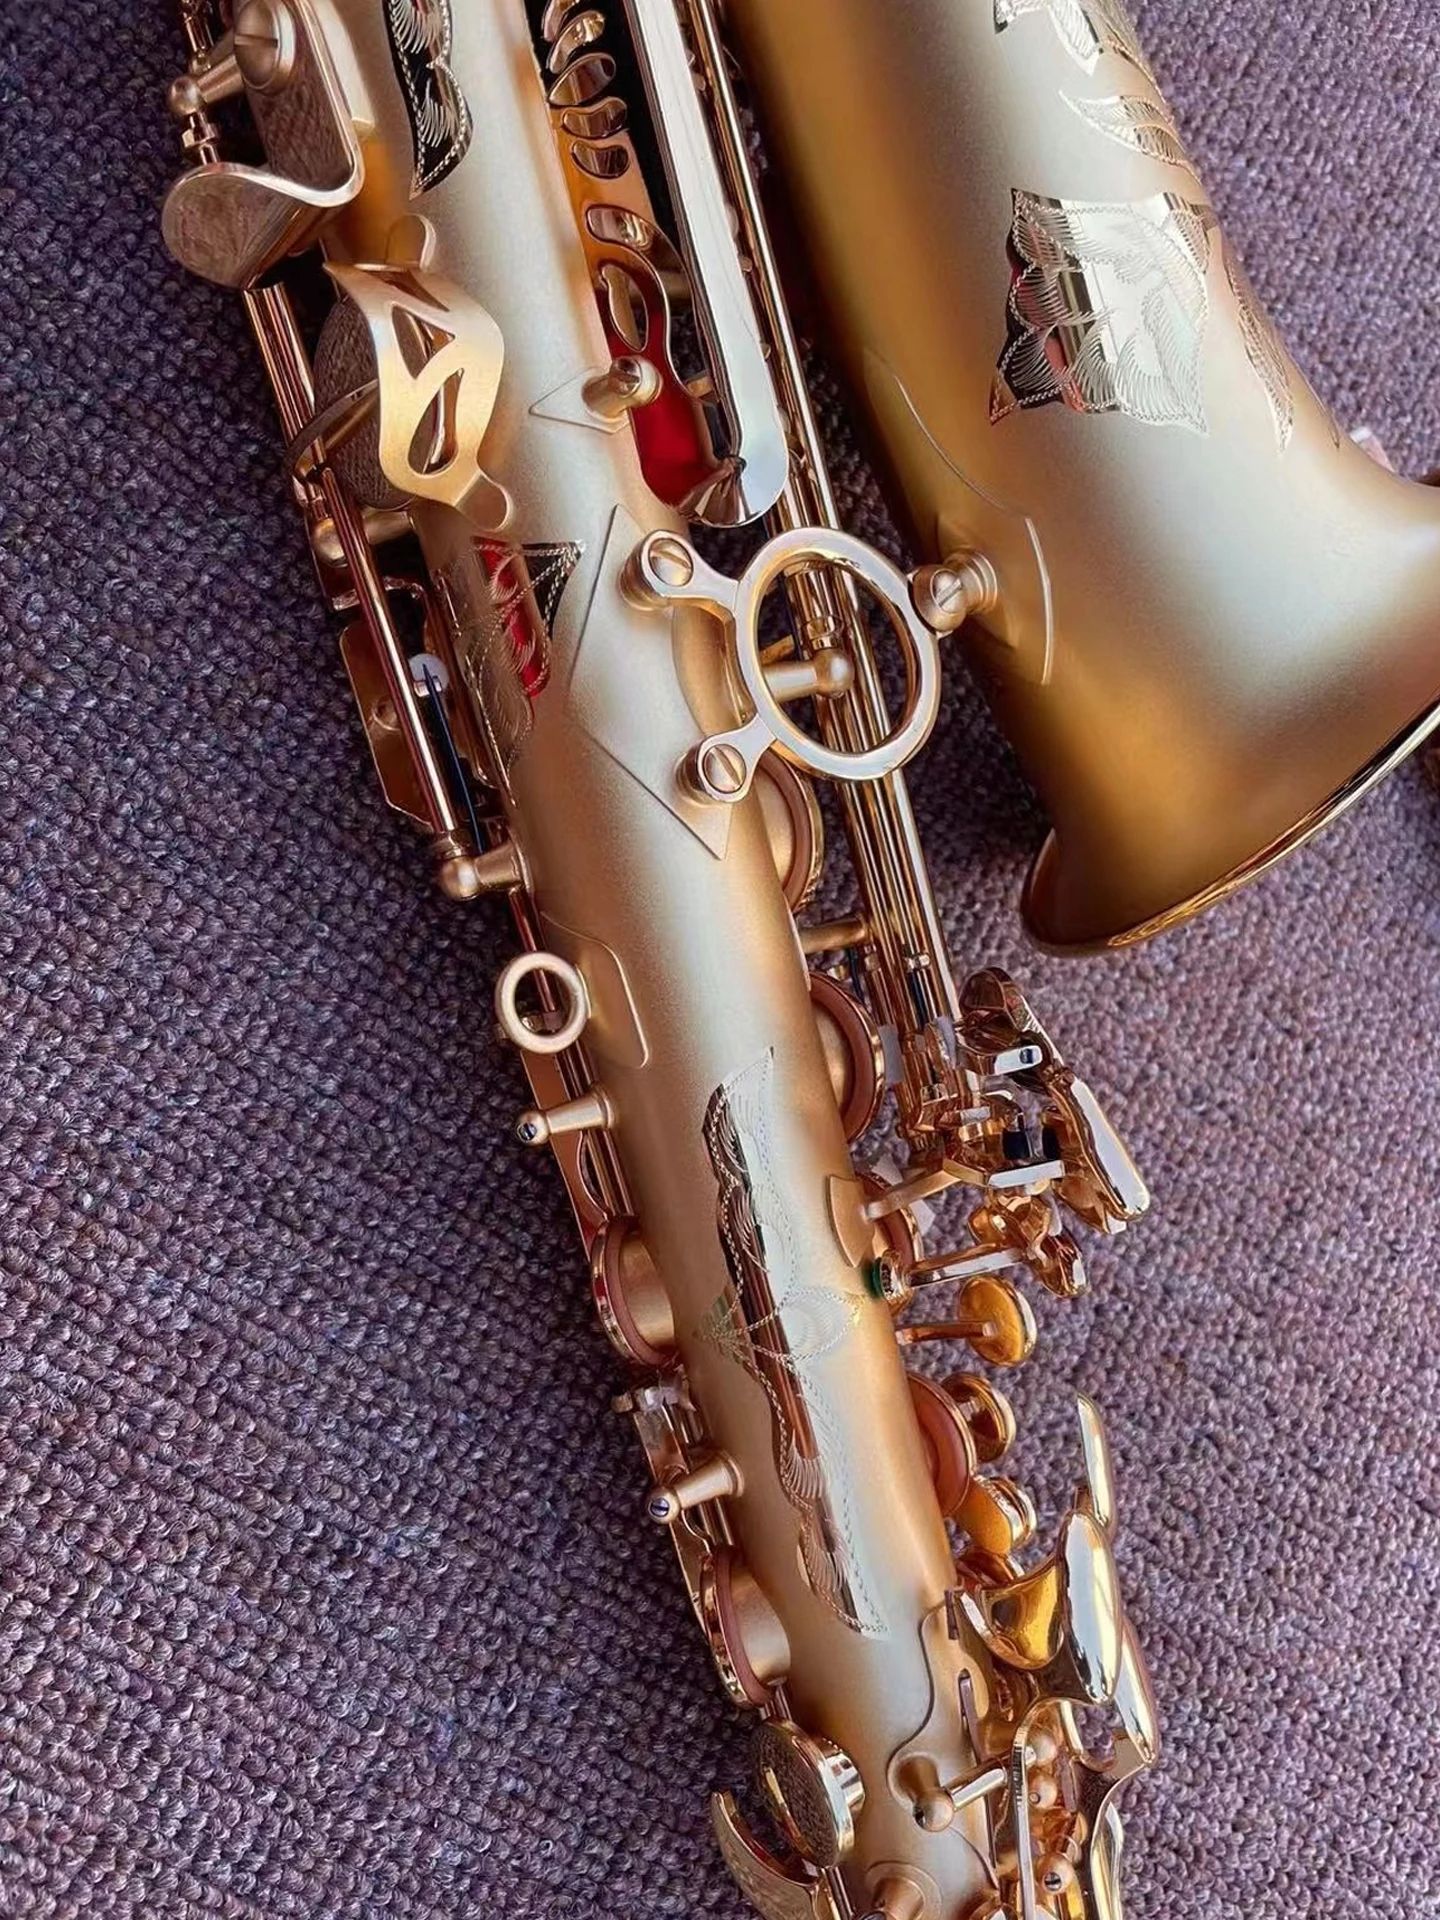 Hemp Gold Professional Alto Saksofon Drop E Ton 54 Wysokiej klasy czysty pozłacany matowy proces saksofonowy instrument jazzowy saksofon